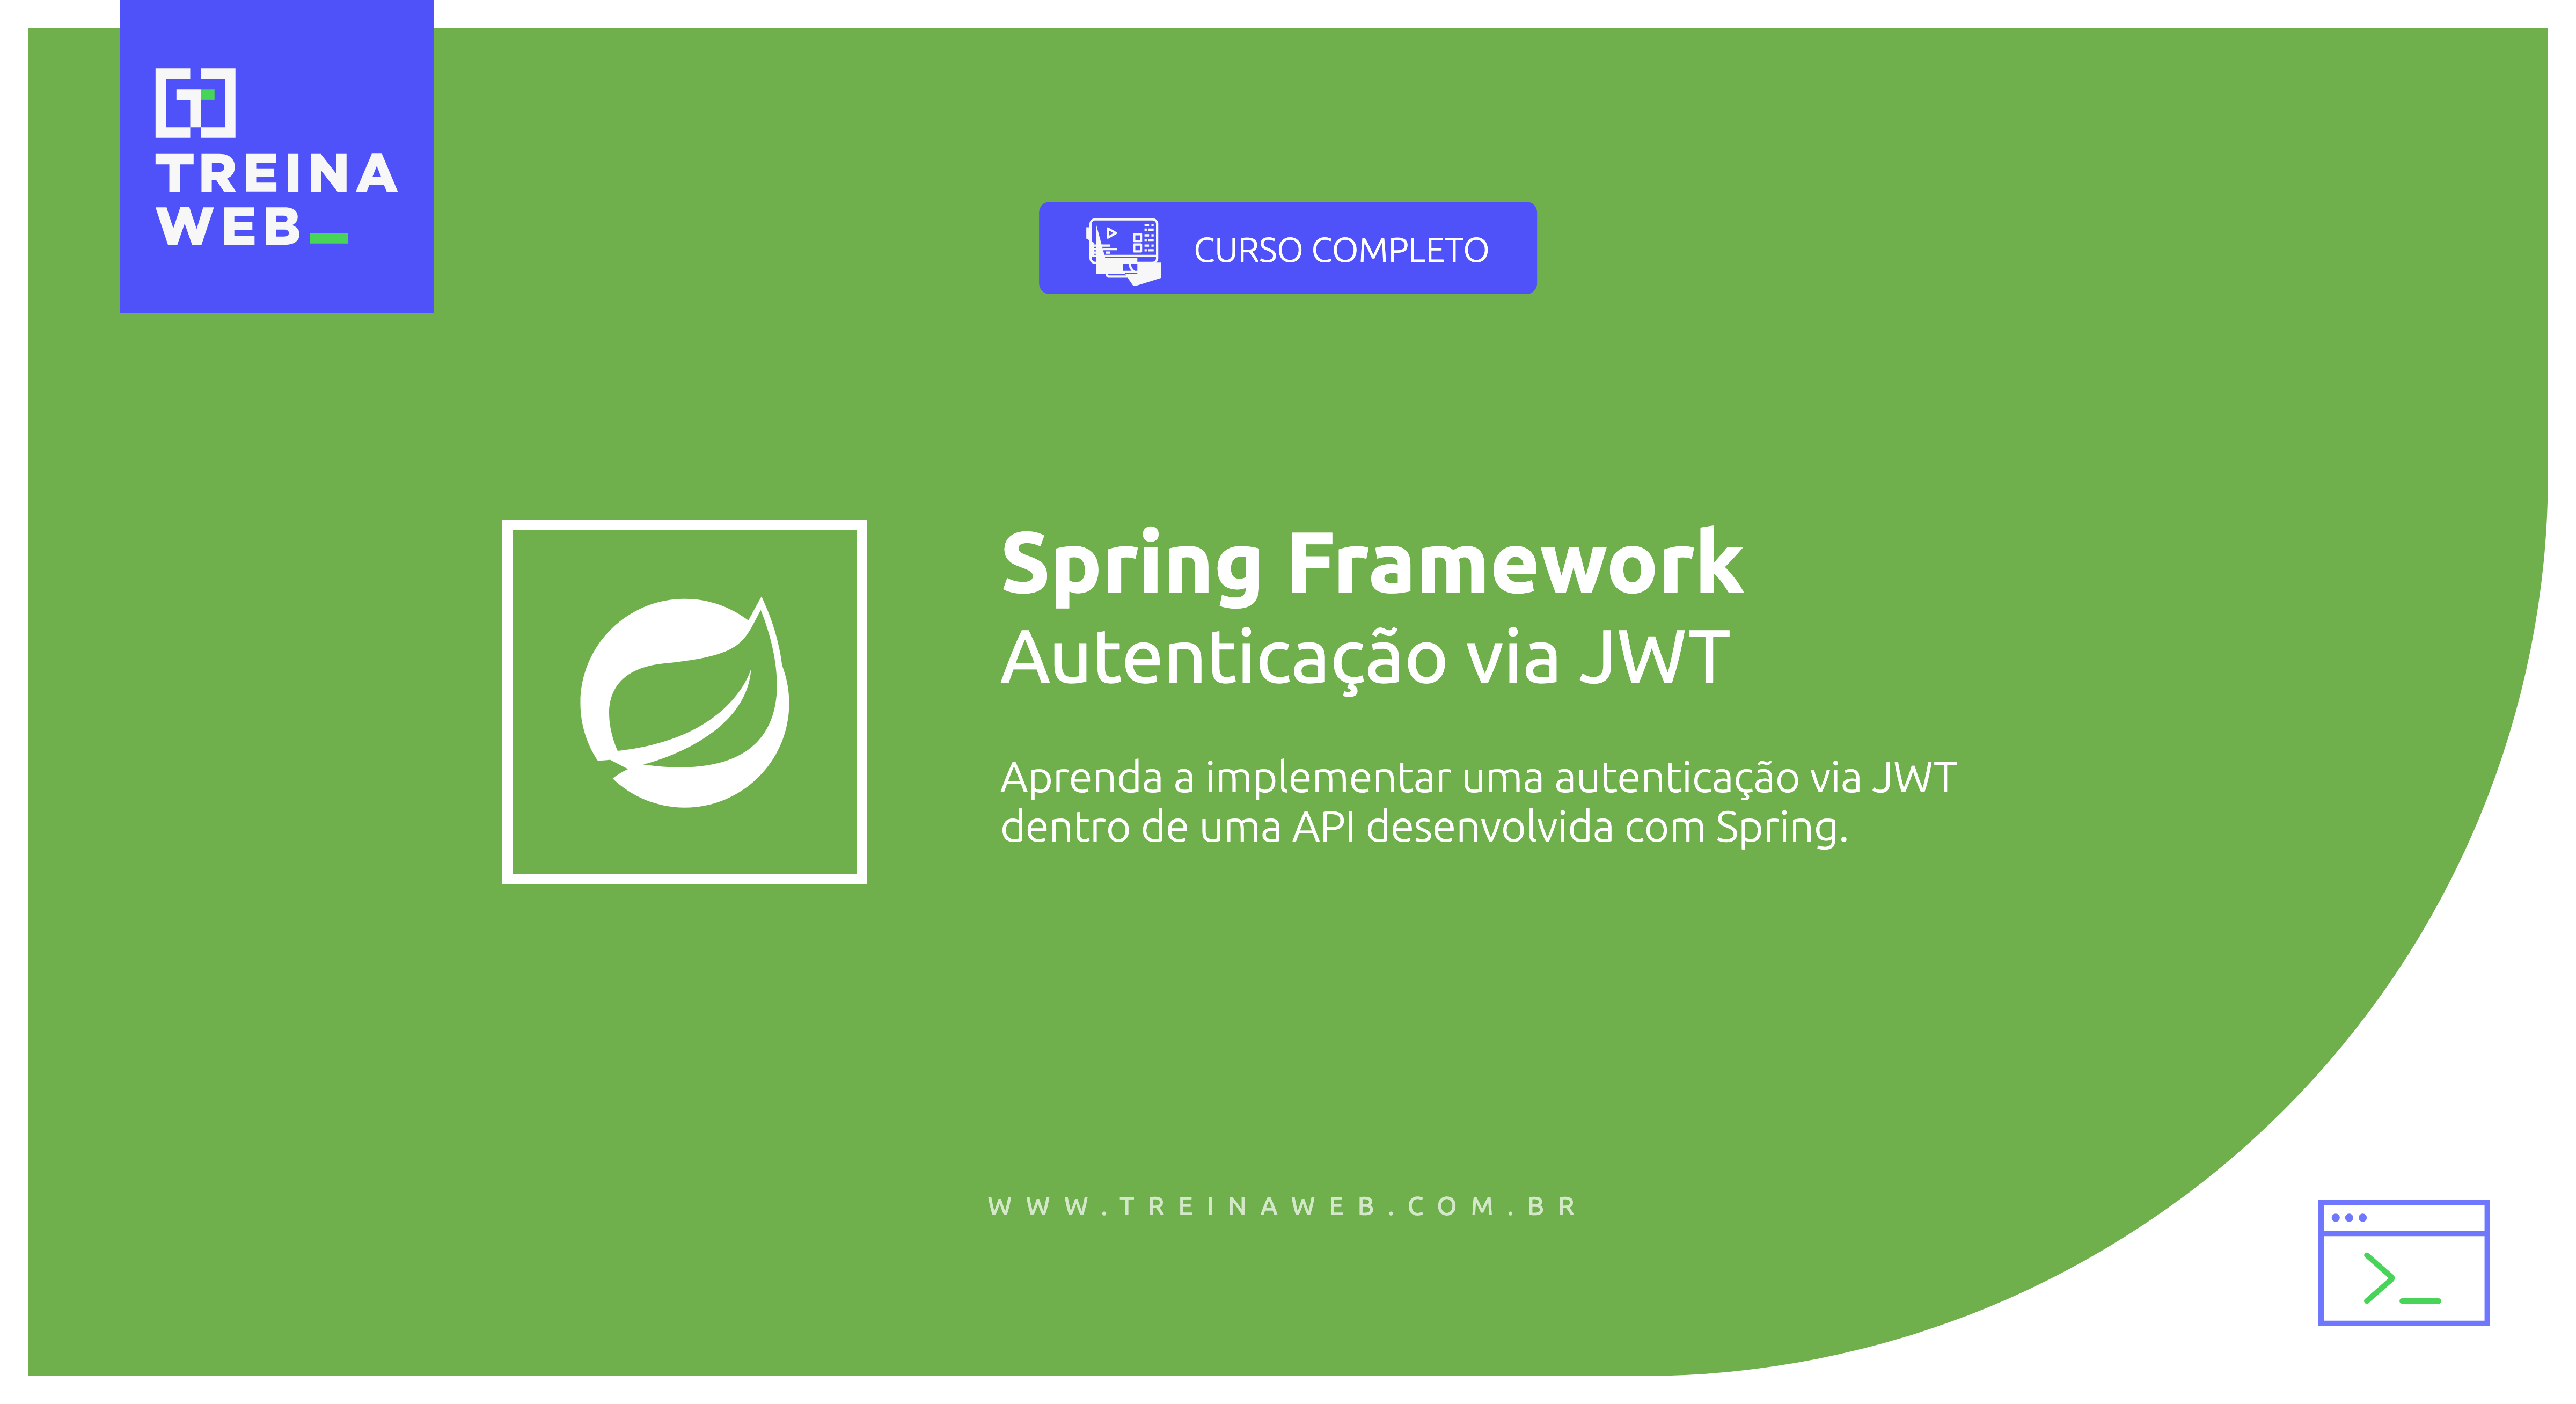 Imagem ilustrativa do curso Spring Framework - Autenticação via JWT